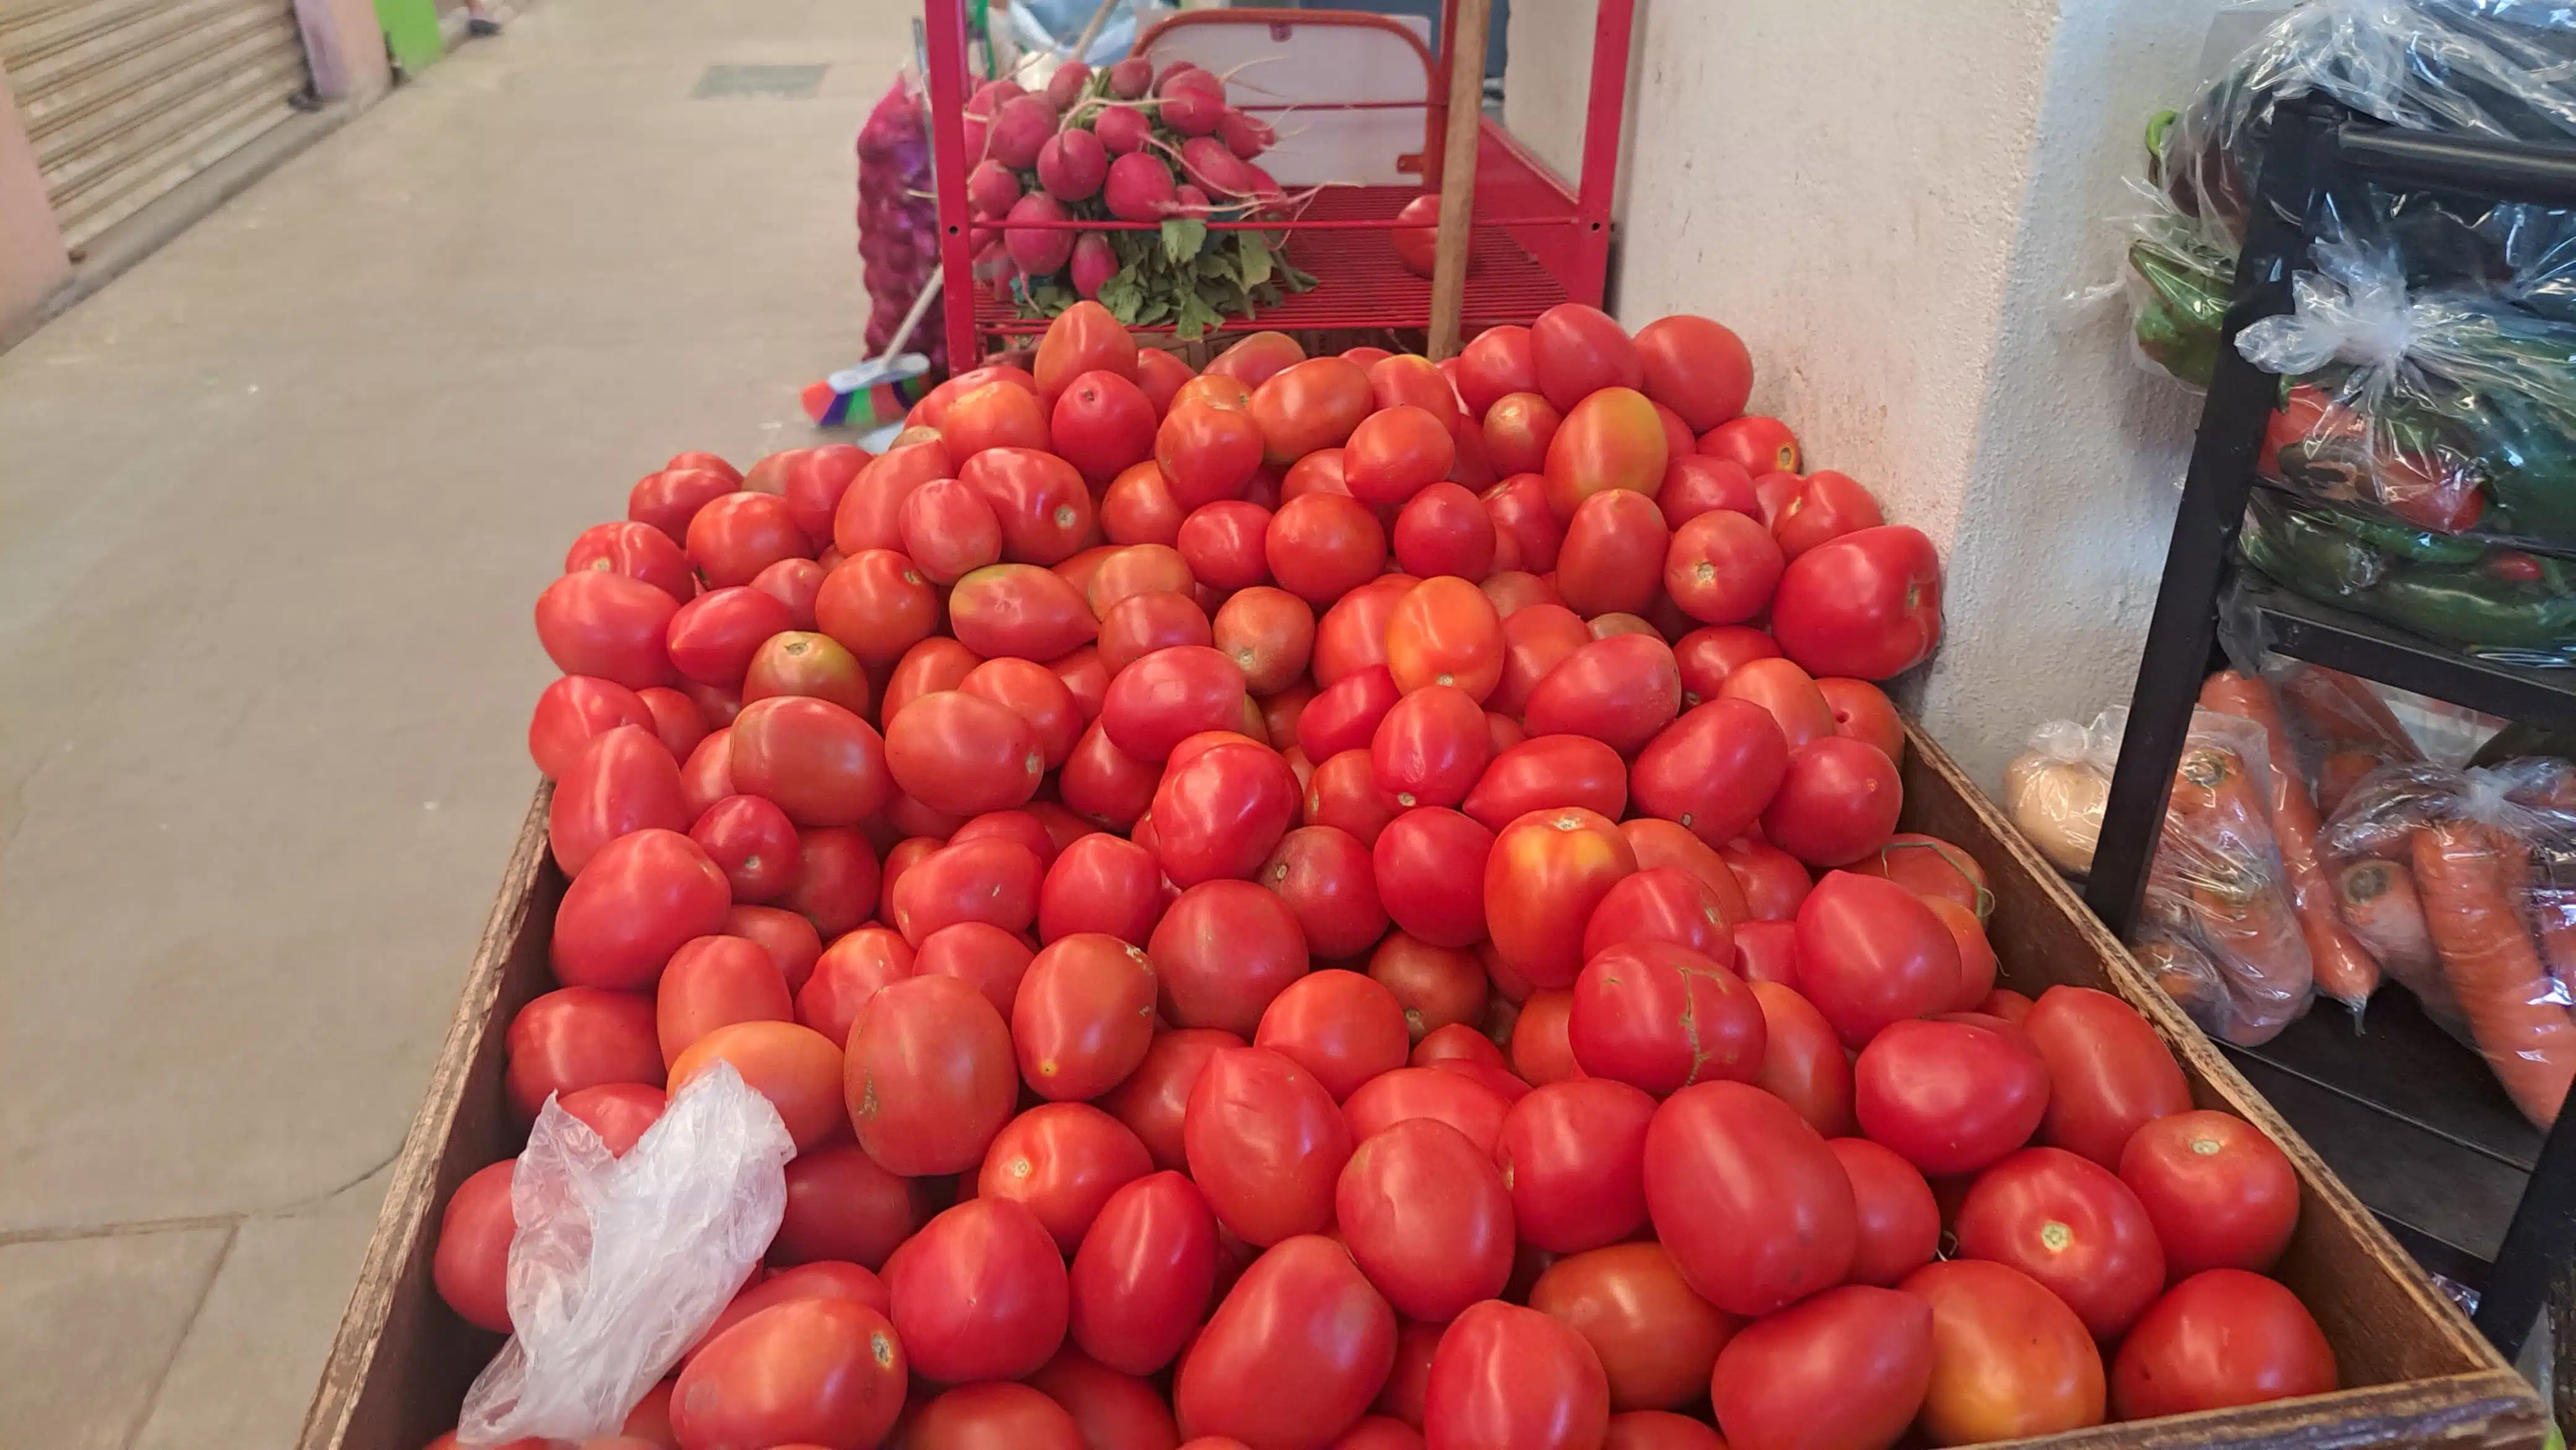 Sube el kilo del tomate y el chile serrano duplica su precio en mercado de Mazatlán